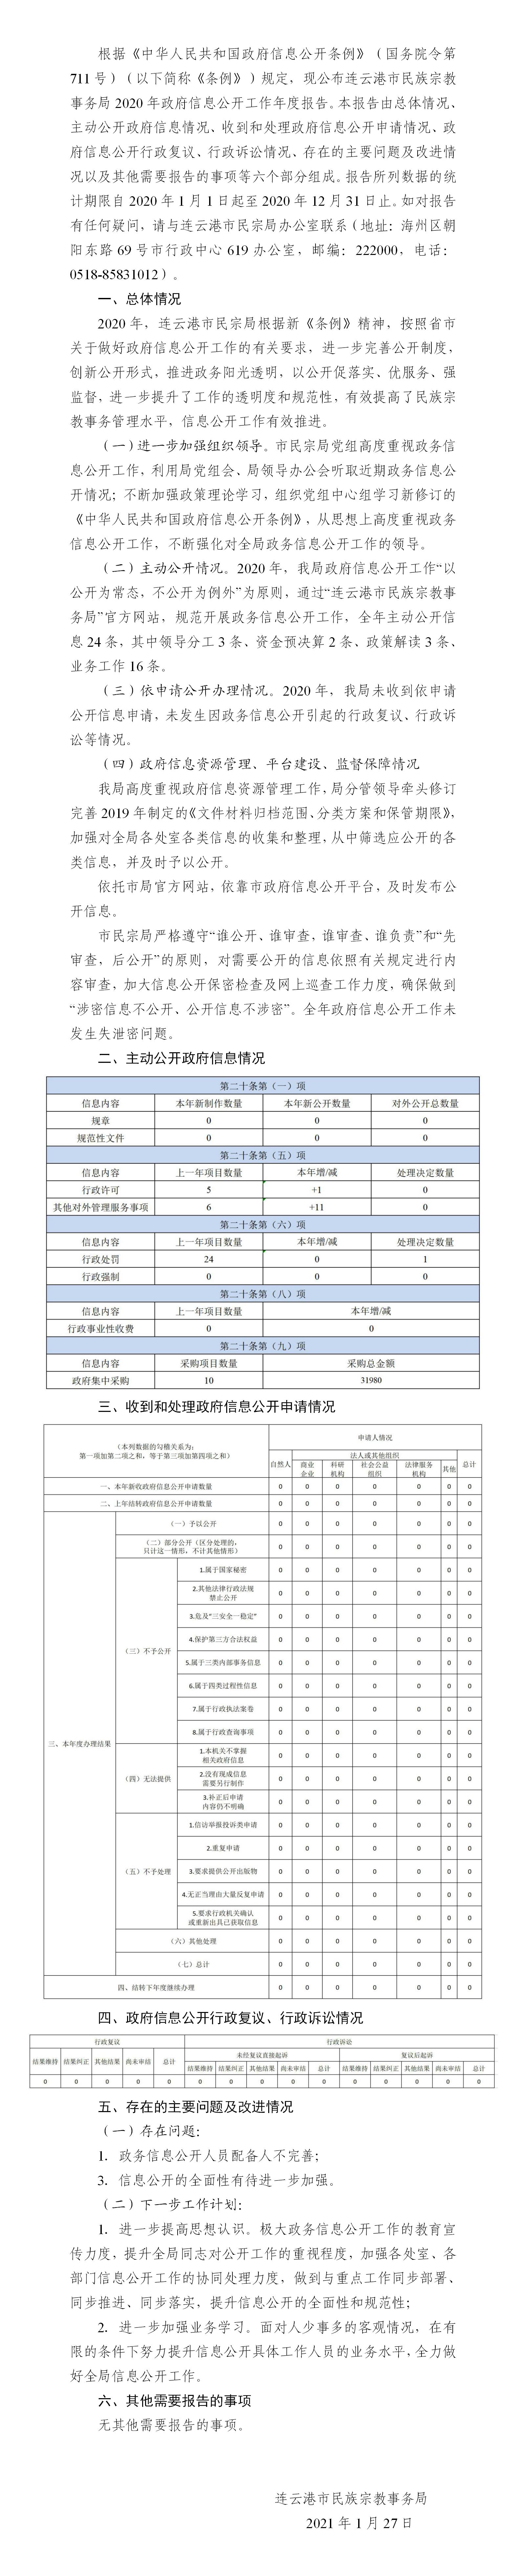 连云港市民族宗教事务局2020年政府信息公开工作年度报告.jpg